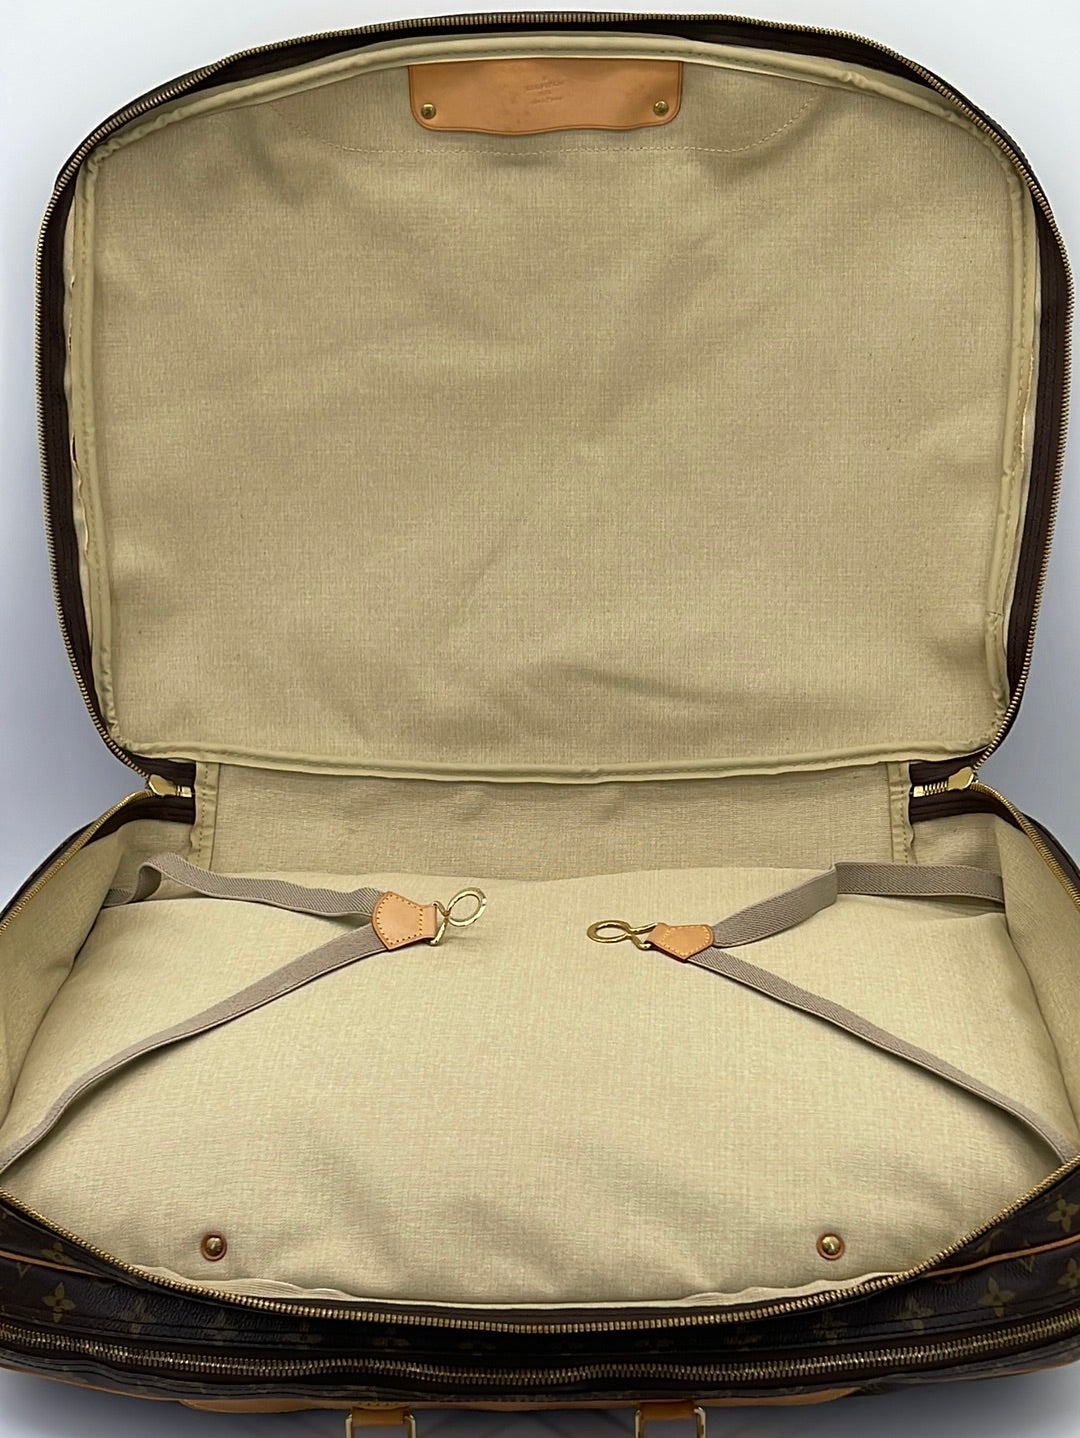 Louis Vuitton 2002 pre-owned Alize 2 Poches handbag - ShopStyle